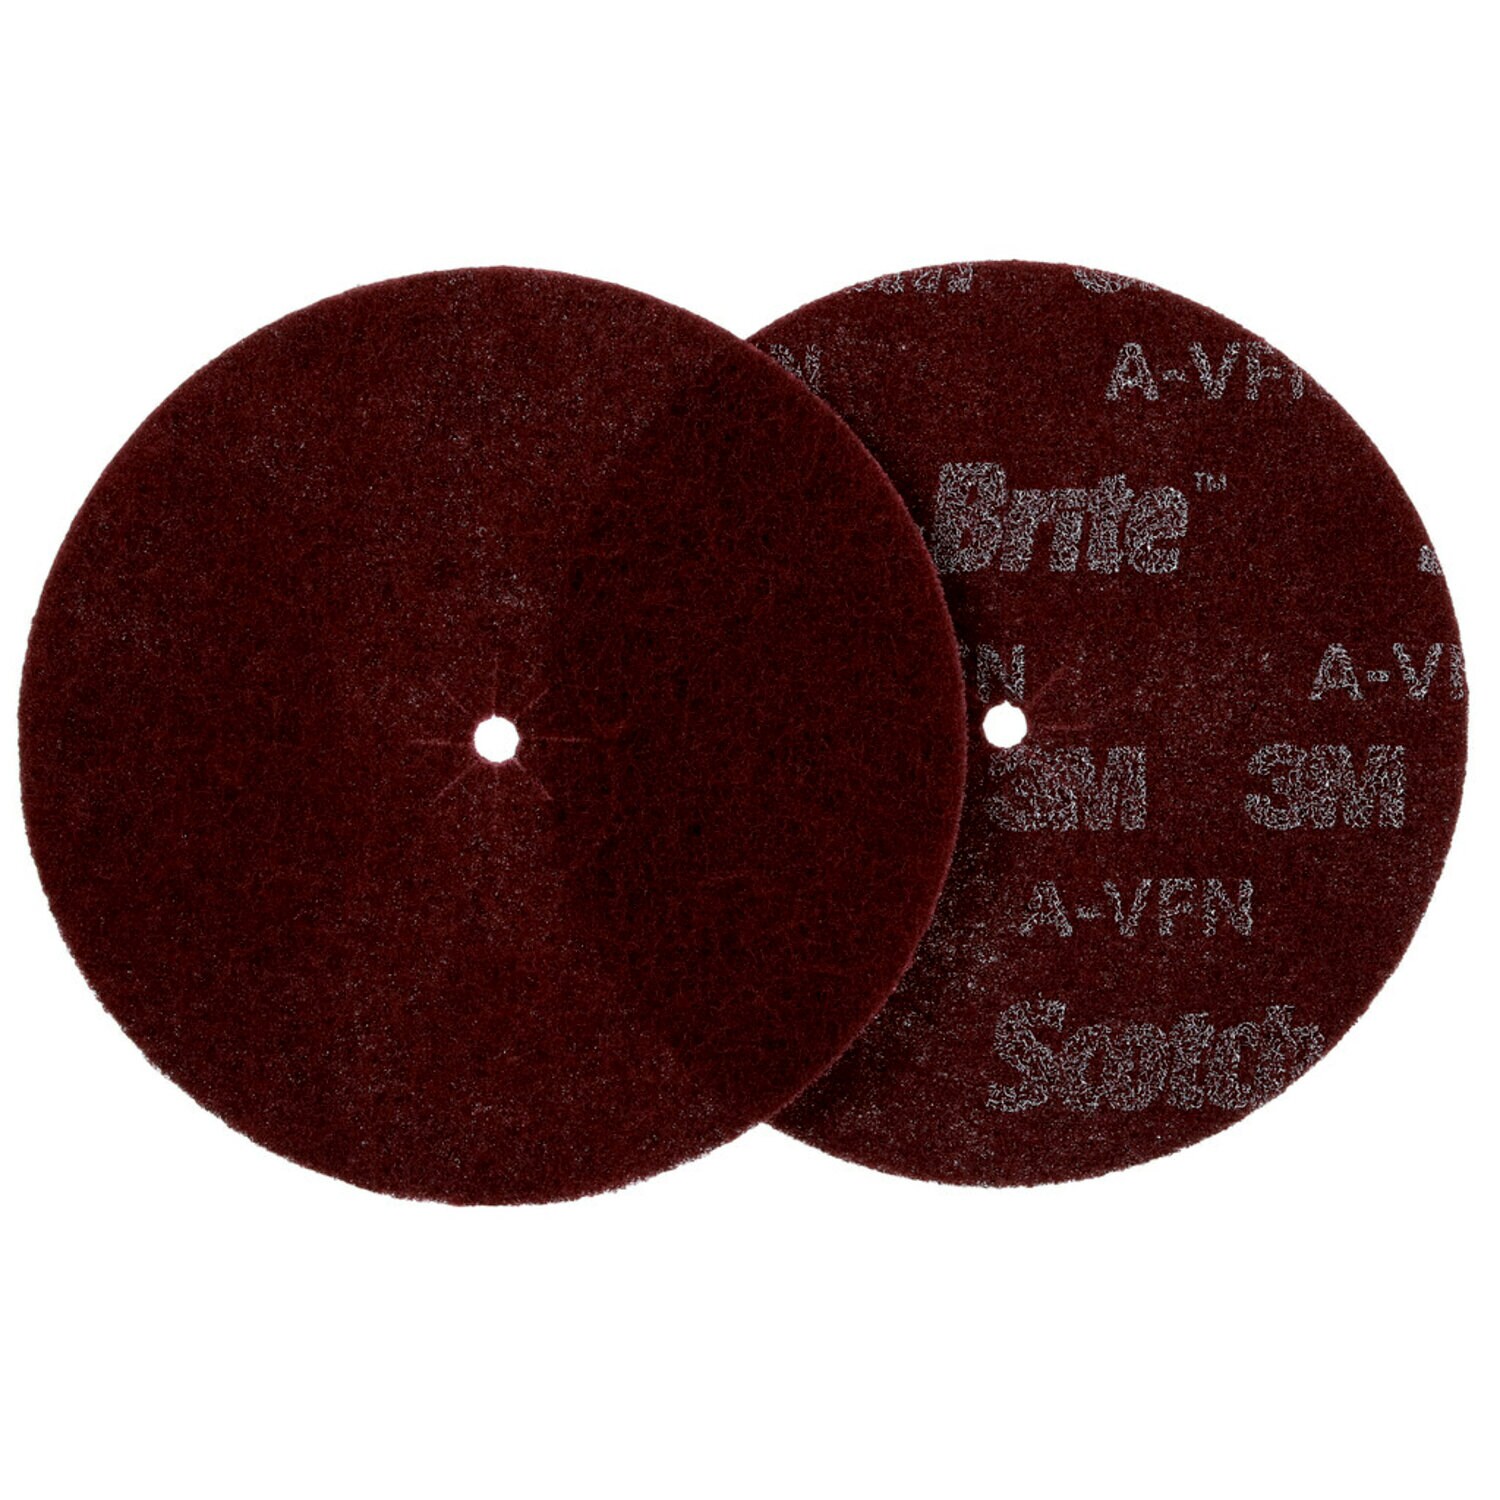 7010401377 - 3M Scotch-Brite Edger Disc Pad 03648, 7 in x .3125 in